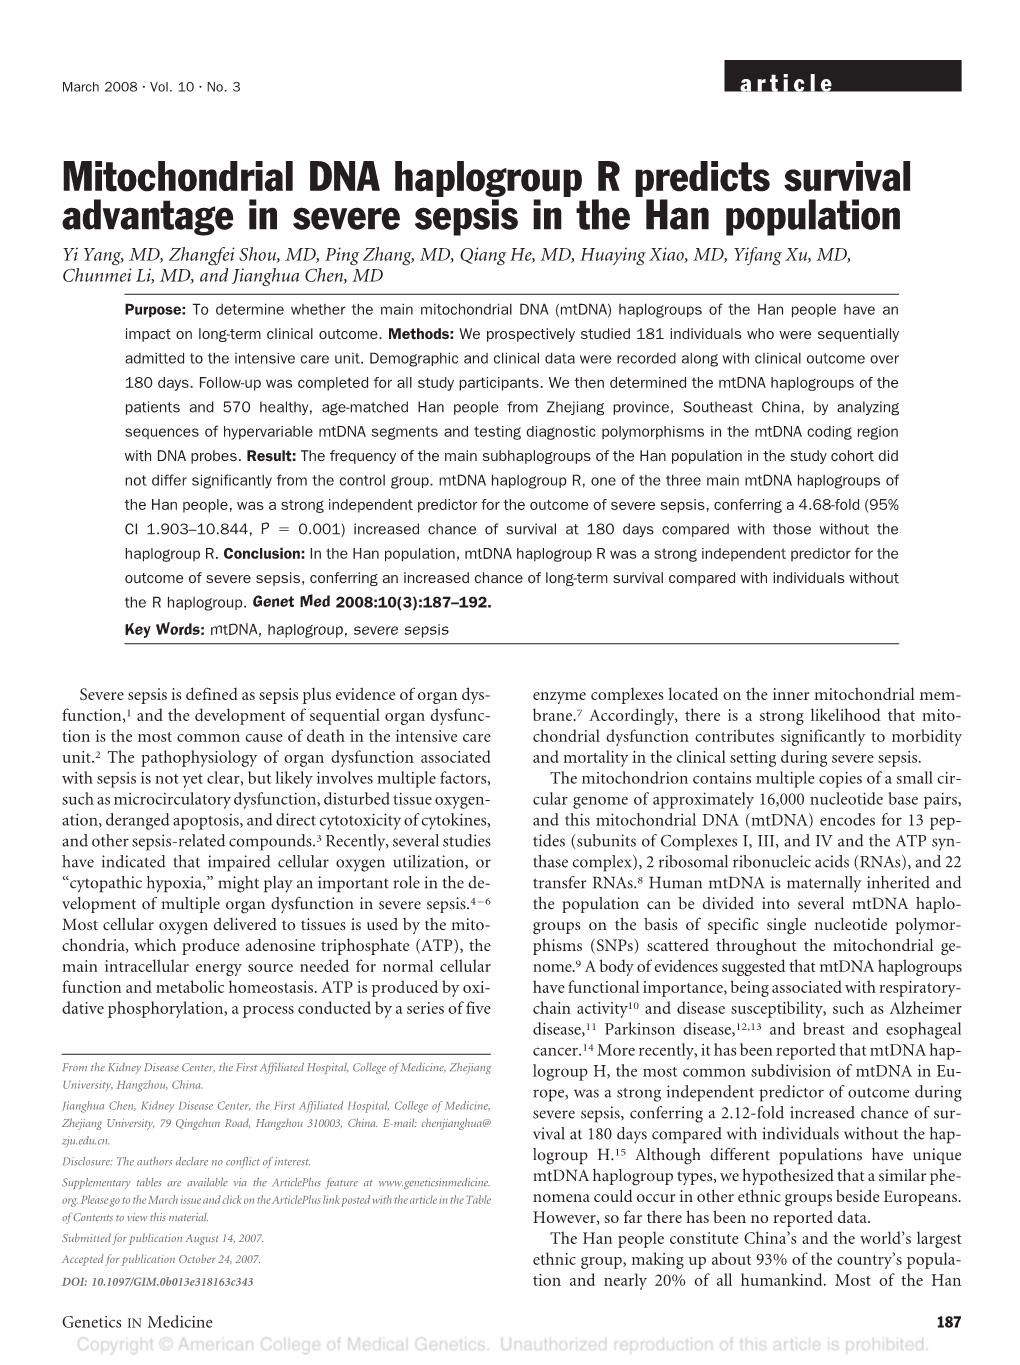 Mitochondrial DNA Haplogroup R Predicts Survival Advantage In